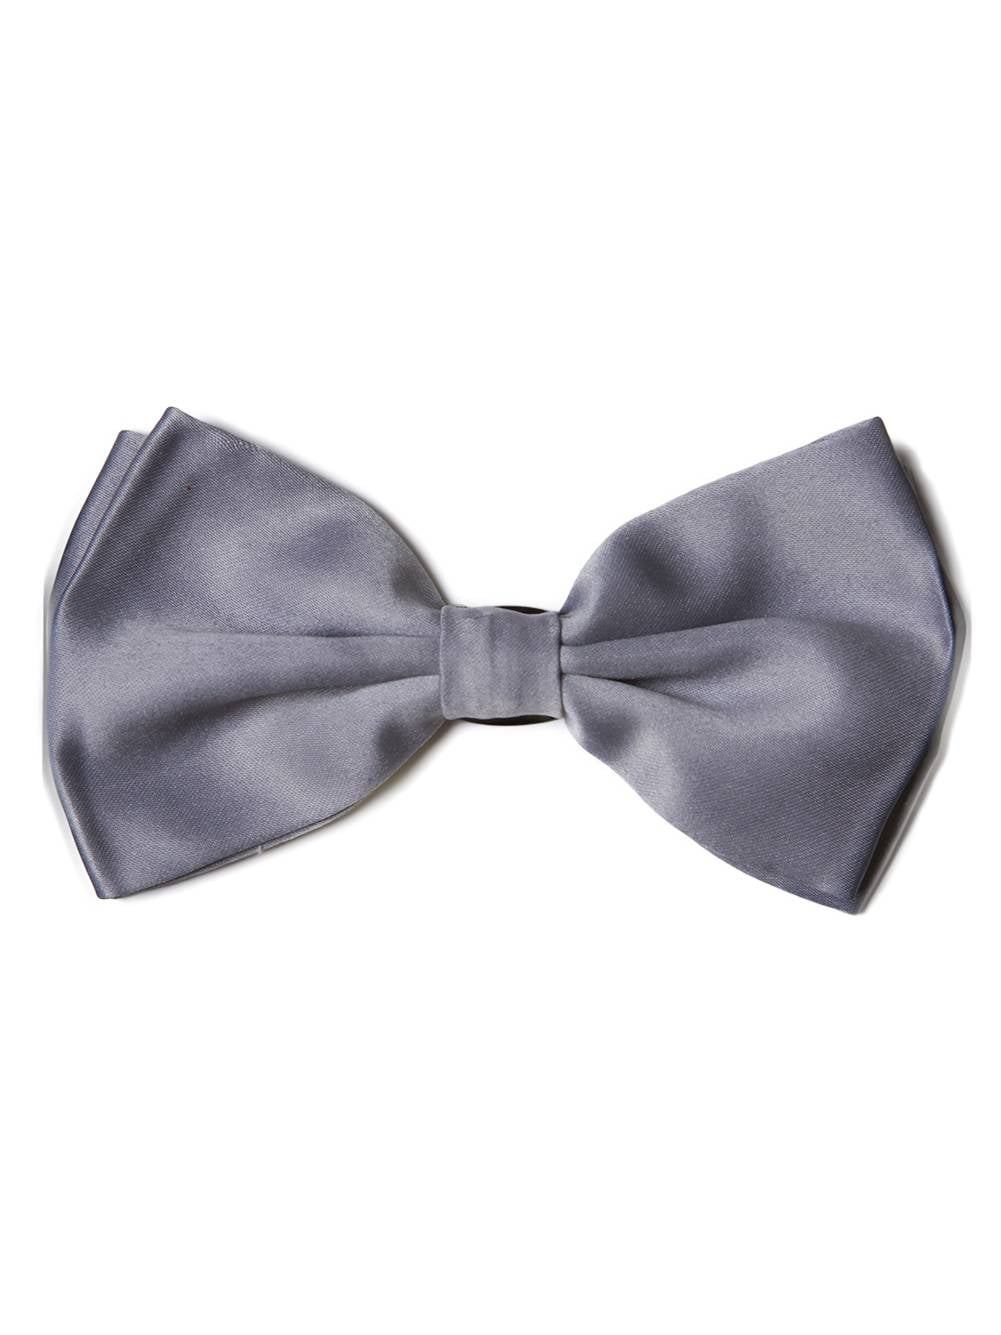 Mens Boys Grey Bow Tie Pre Tied Wedding Party Fancy Plain Silk Satin Necktie 